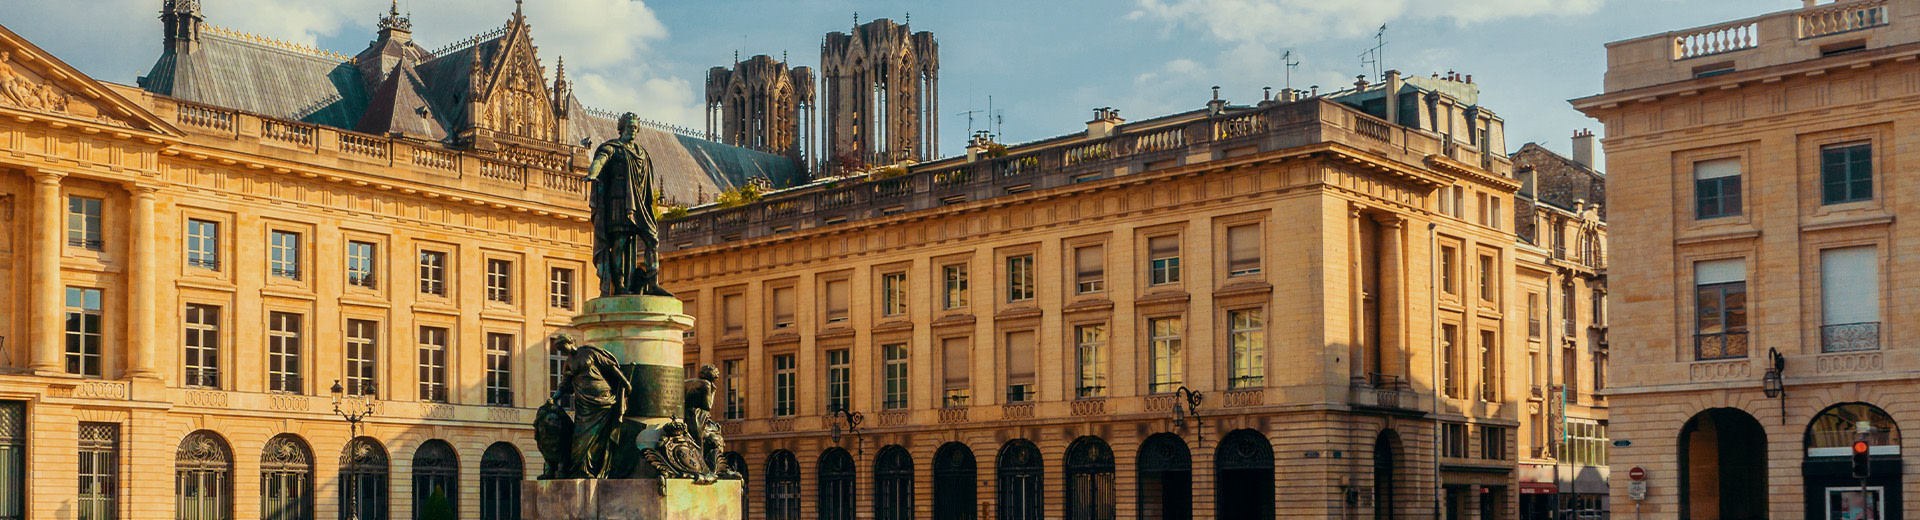 Ein Bild von Place Royale, ein Platz in Reims. Im Vordergrund steht eine Bronzestatue von Louis XV. Die Zwillingstürme von Cathédrale Notre-Dame sind über Gebäuden im Hintergrund sichtbar.